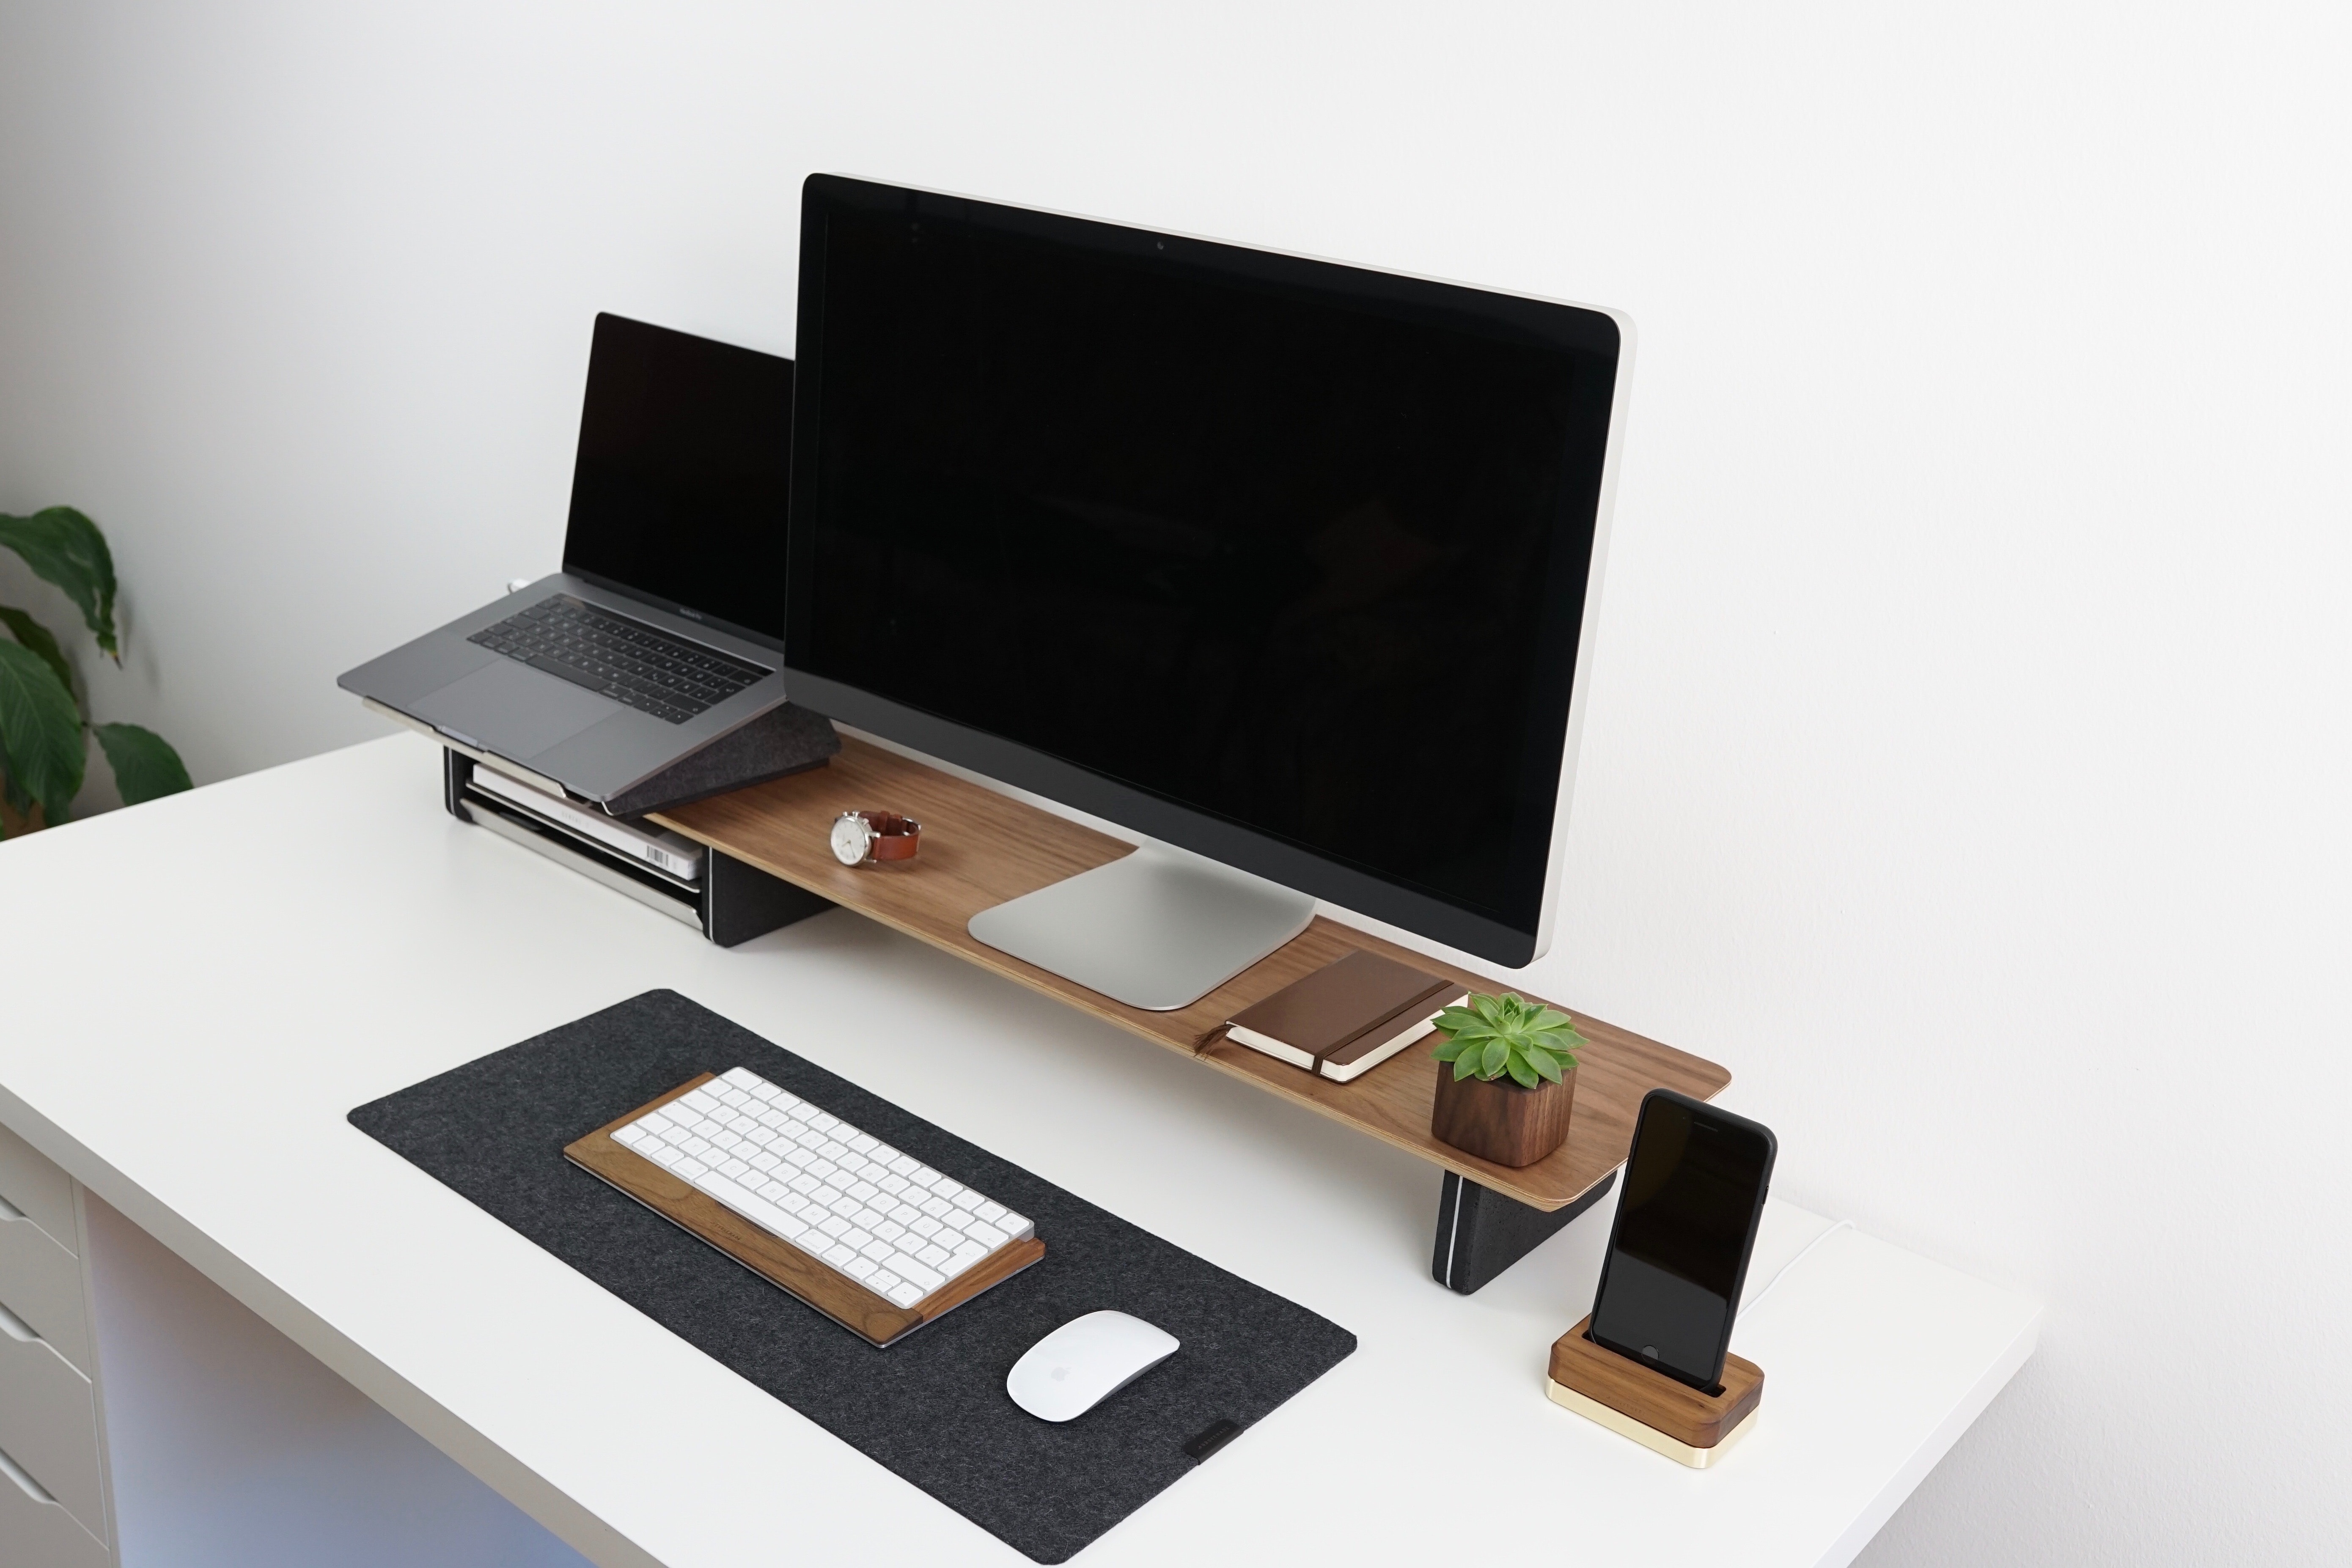 Akcesoria do laptopa - stacja dokująca, monitor, myszka